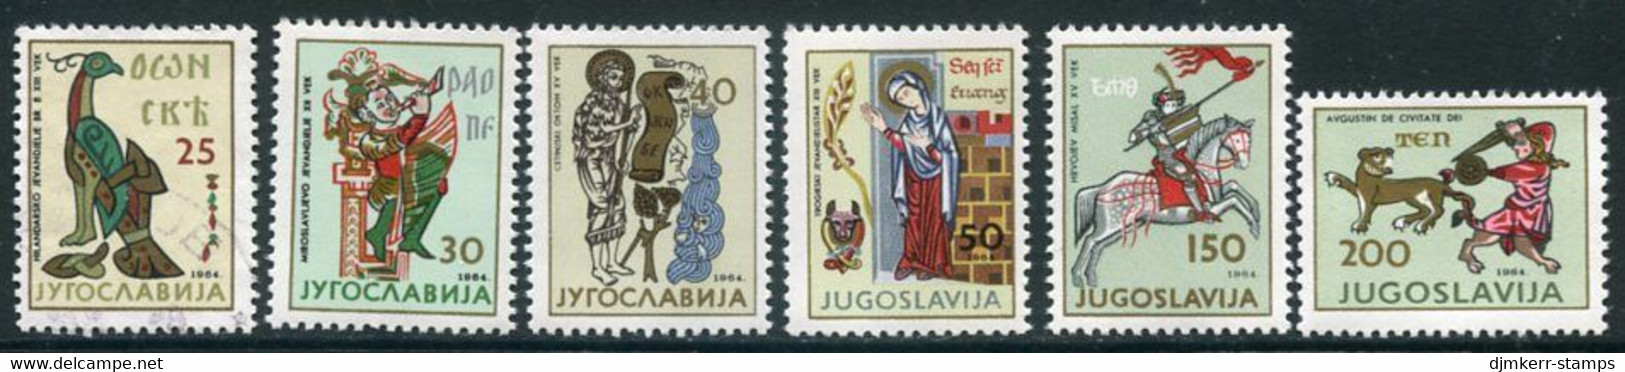 YUGOSLAVIA 1964 Art III  MNH / **.  Michel 1095-100 - Unused Stamps